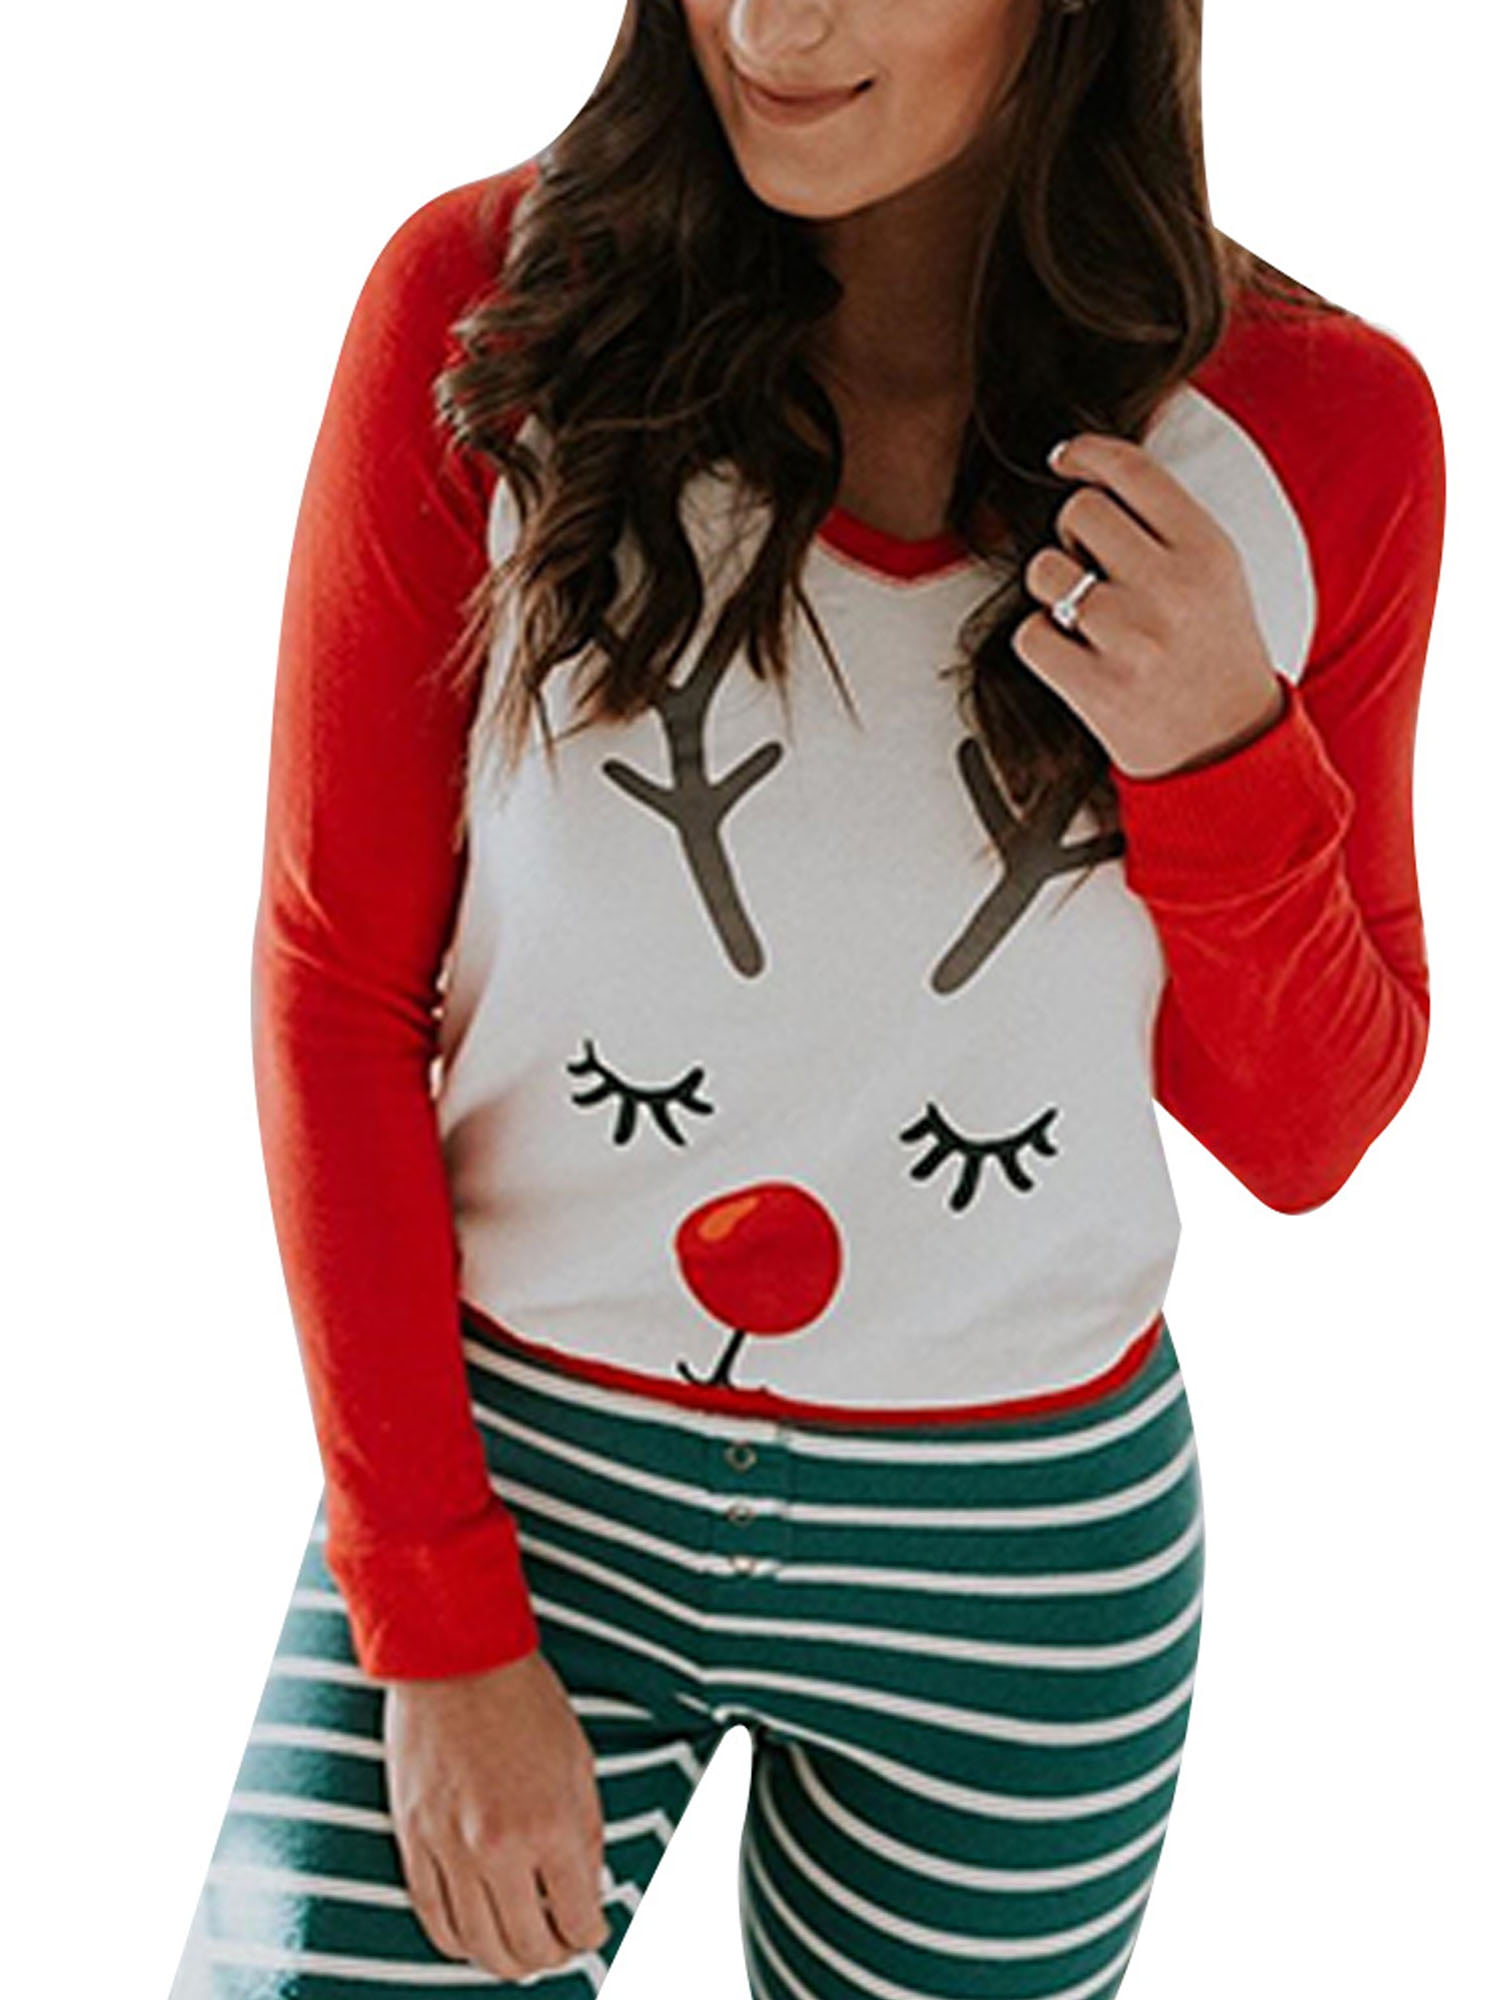 Ma&Baby - Ma&Baby Christmas Pajamas For Women Reindeer Print Xmas